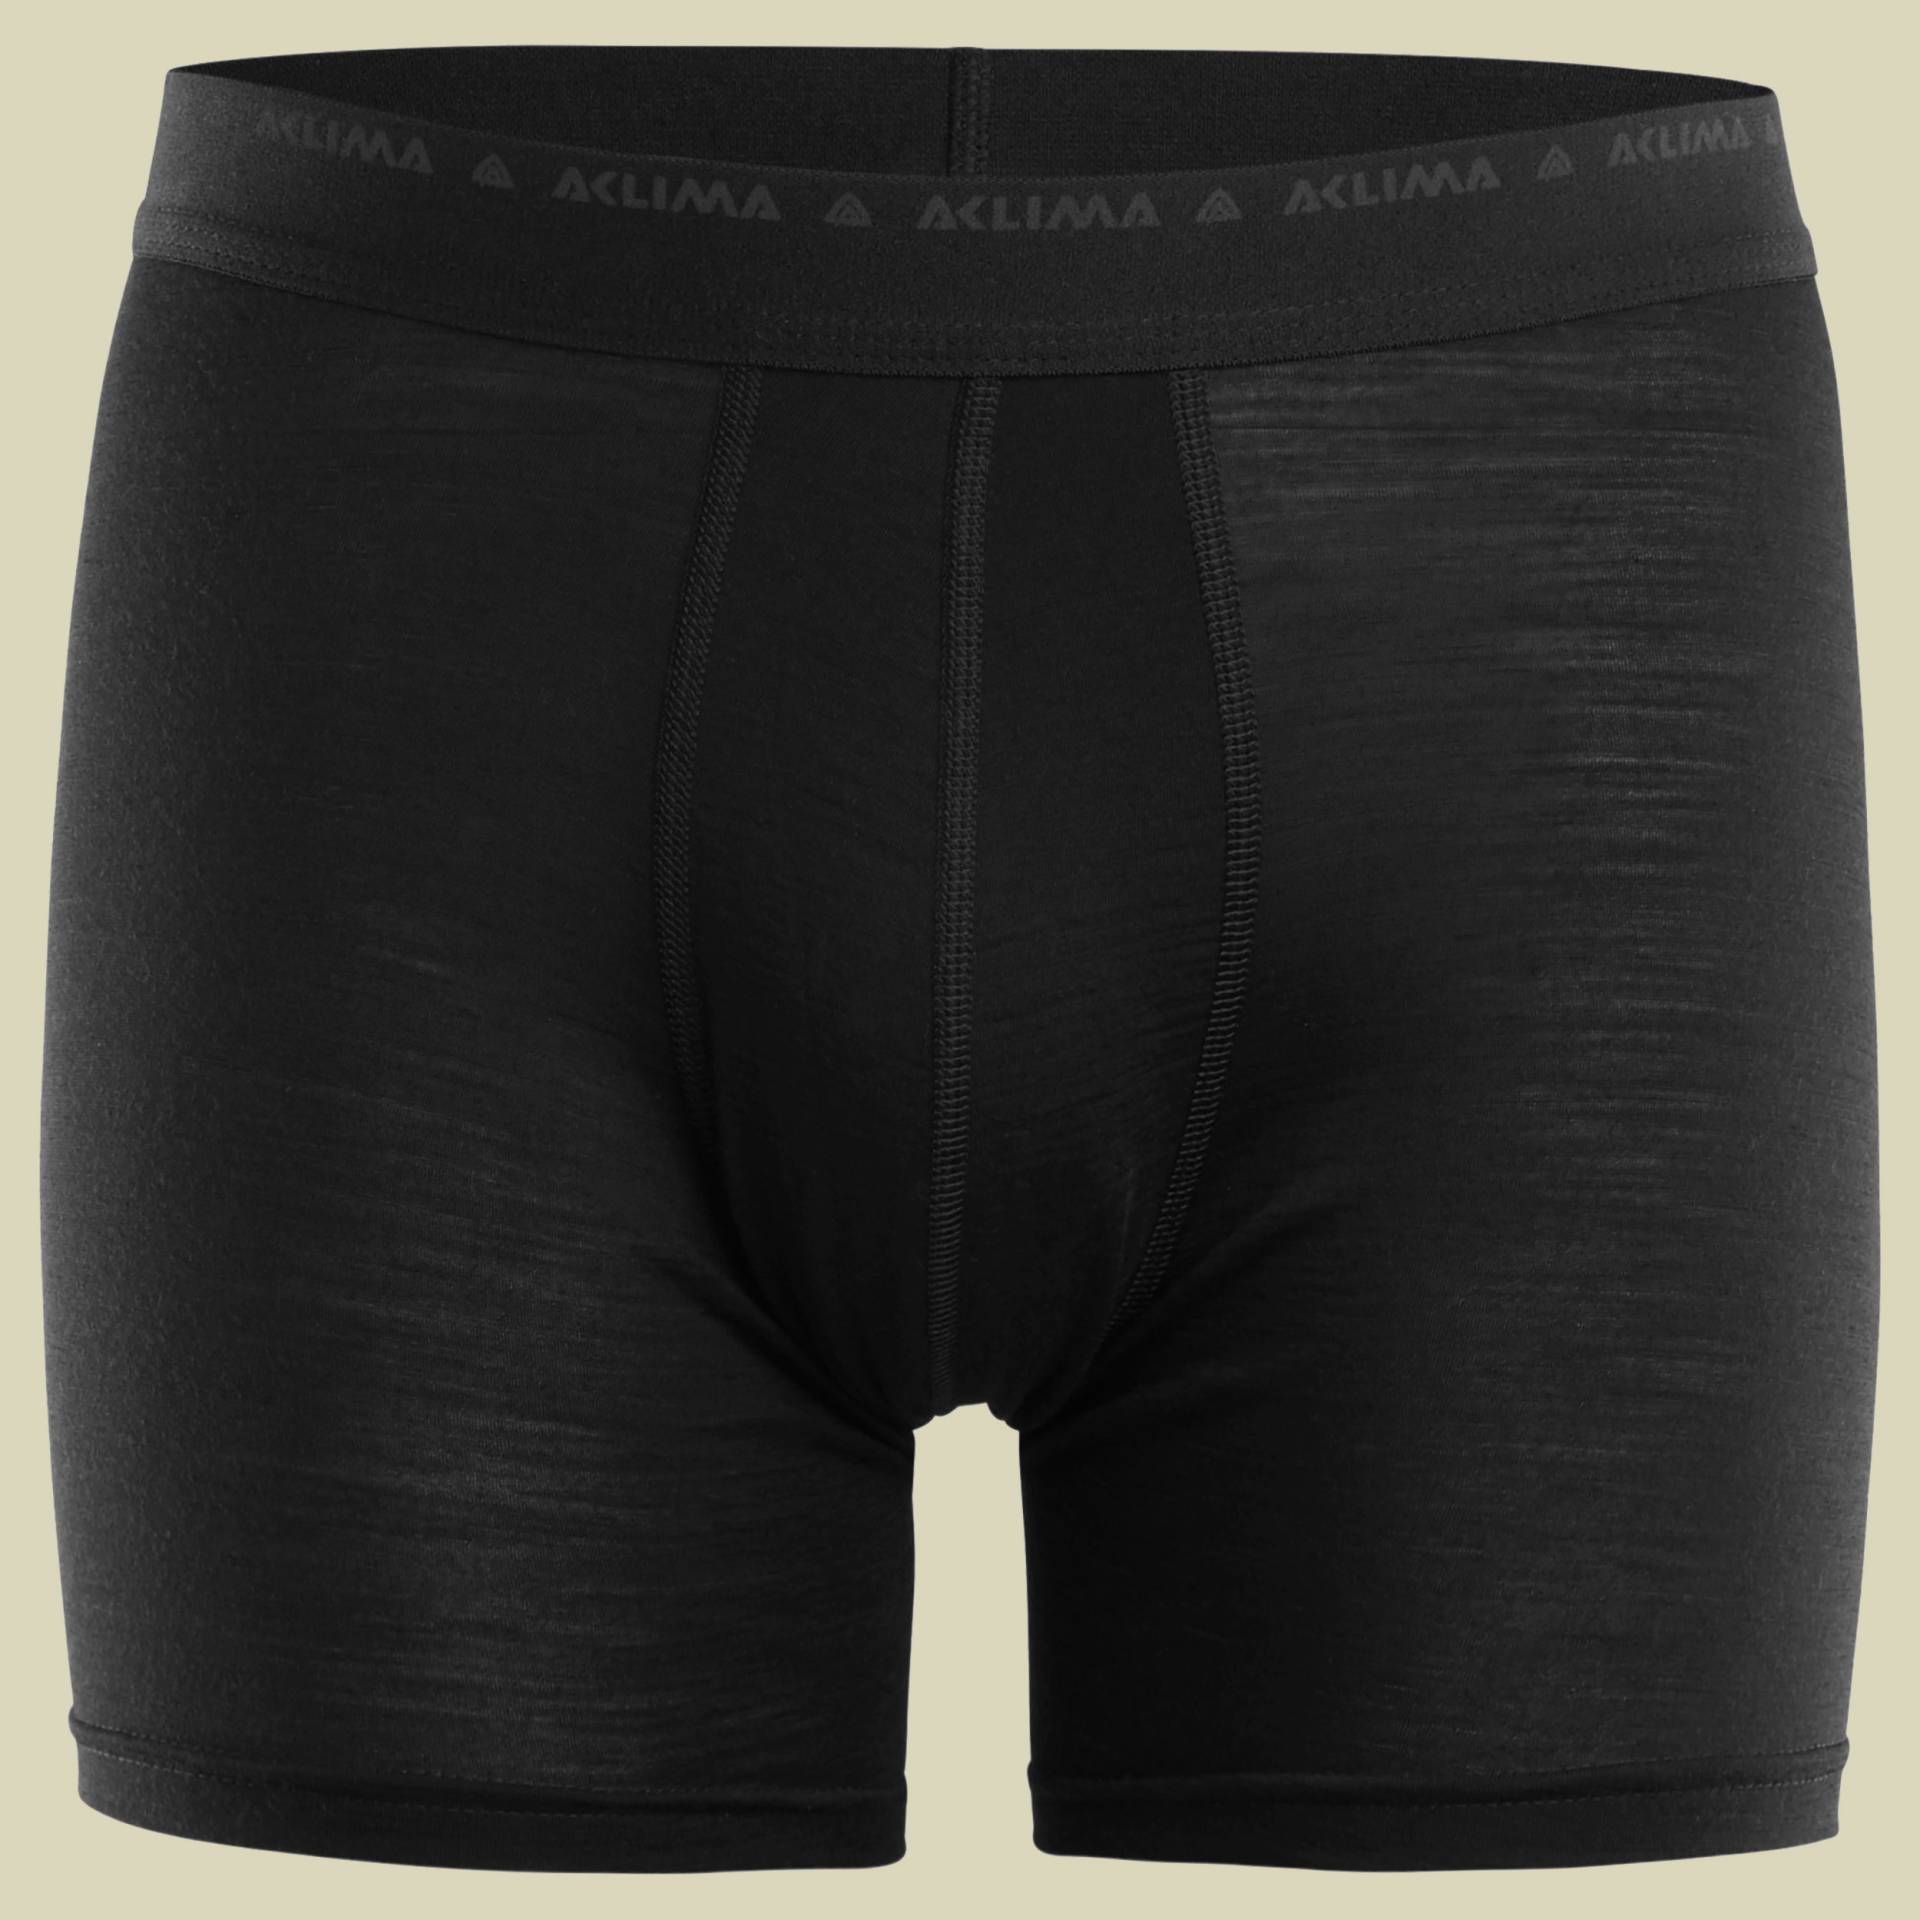 LightWool Shorts/Boxer Men Größe XL Farbe jet black von aclima